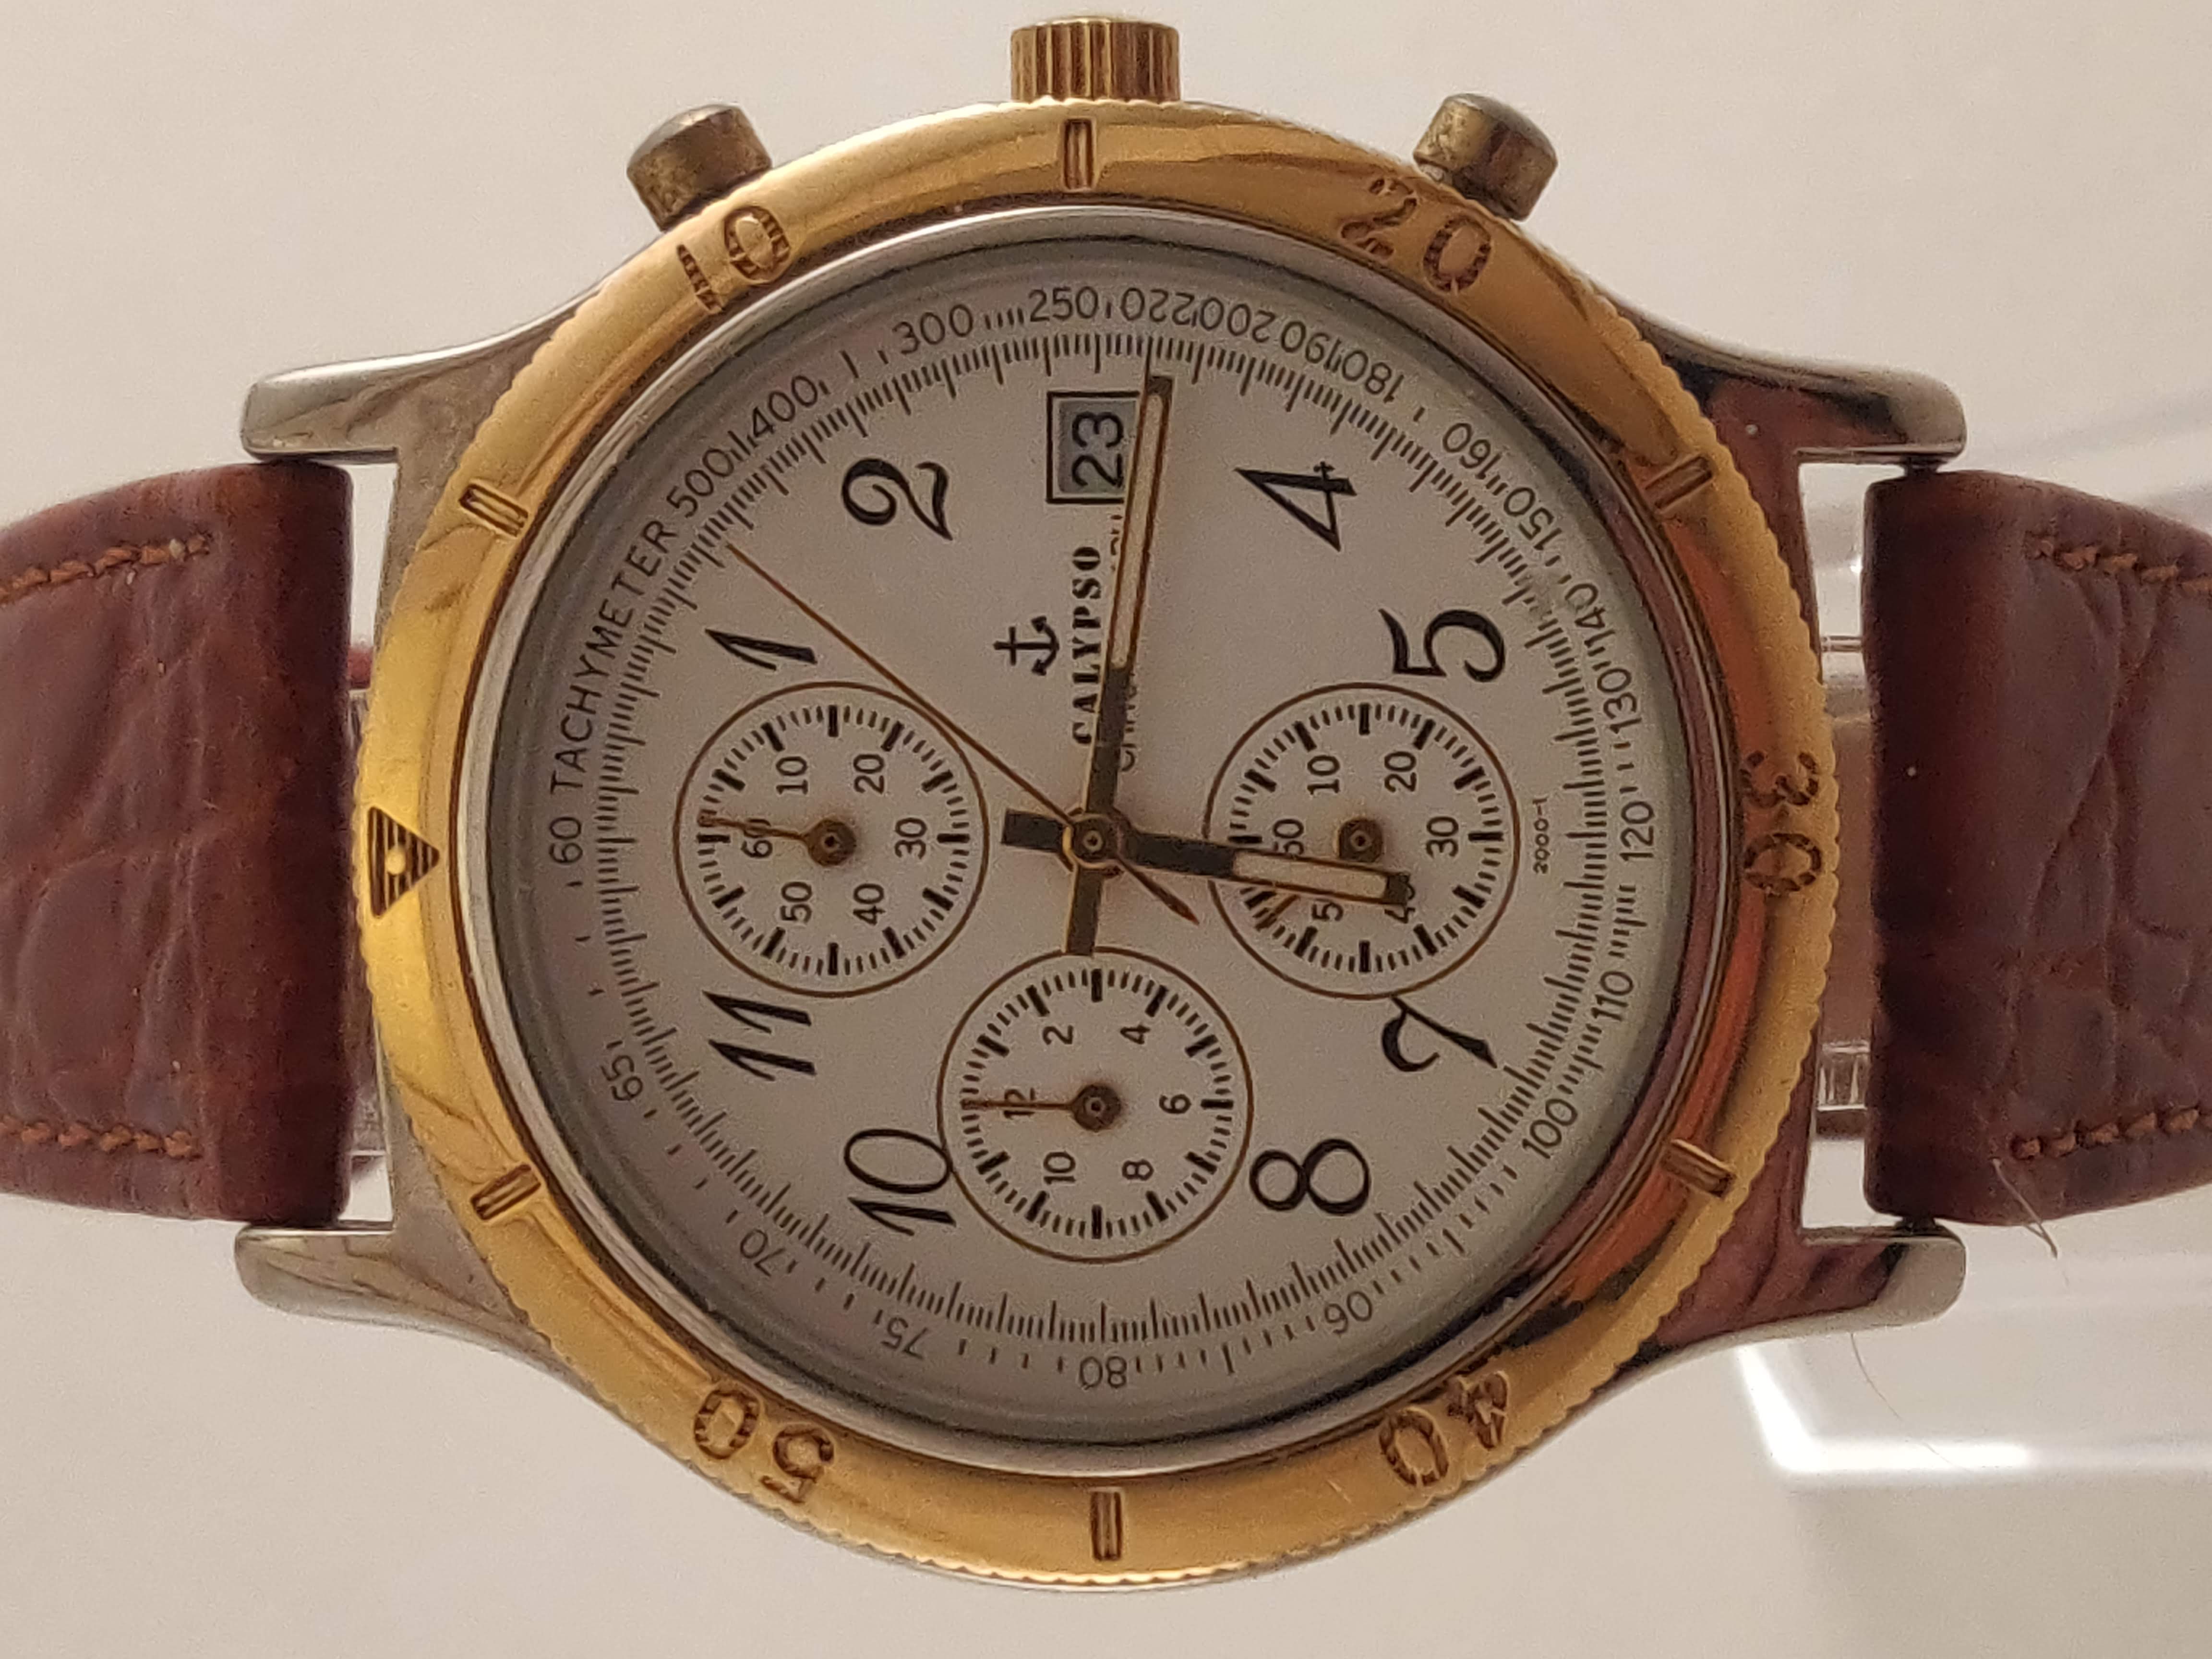 Calypso Chronograaf Heren Horloge